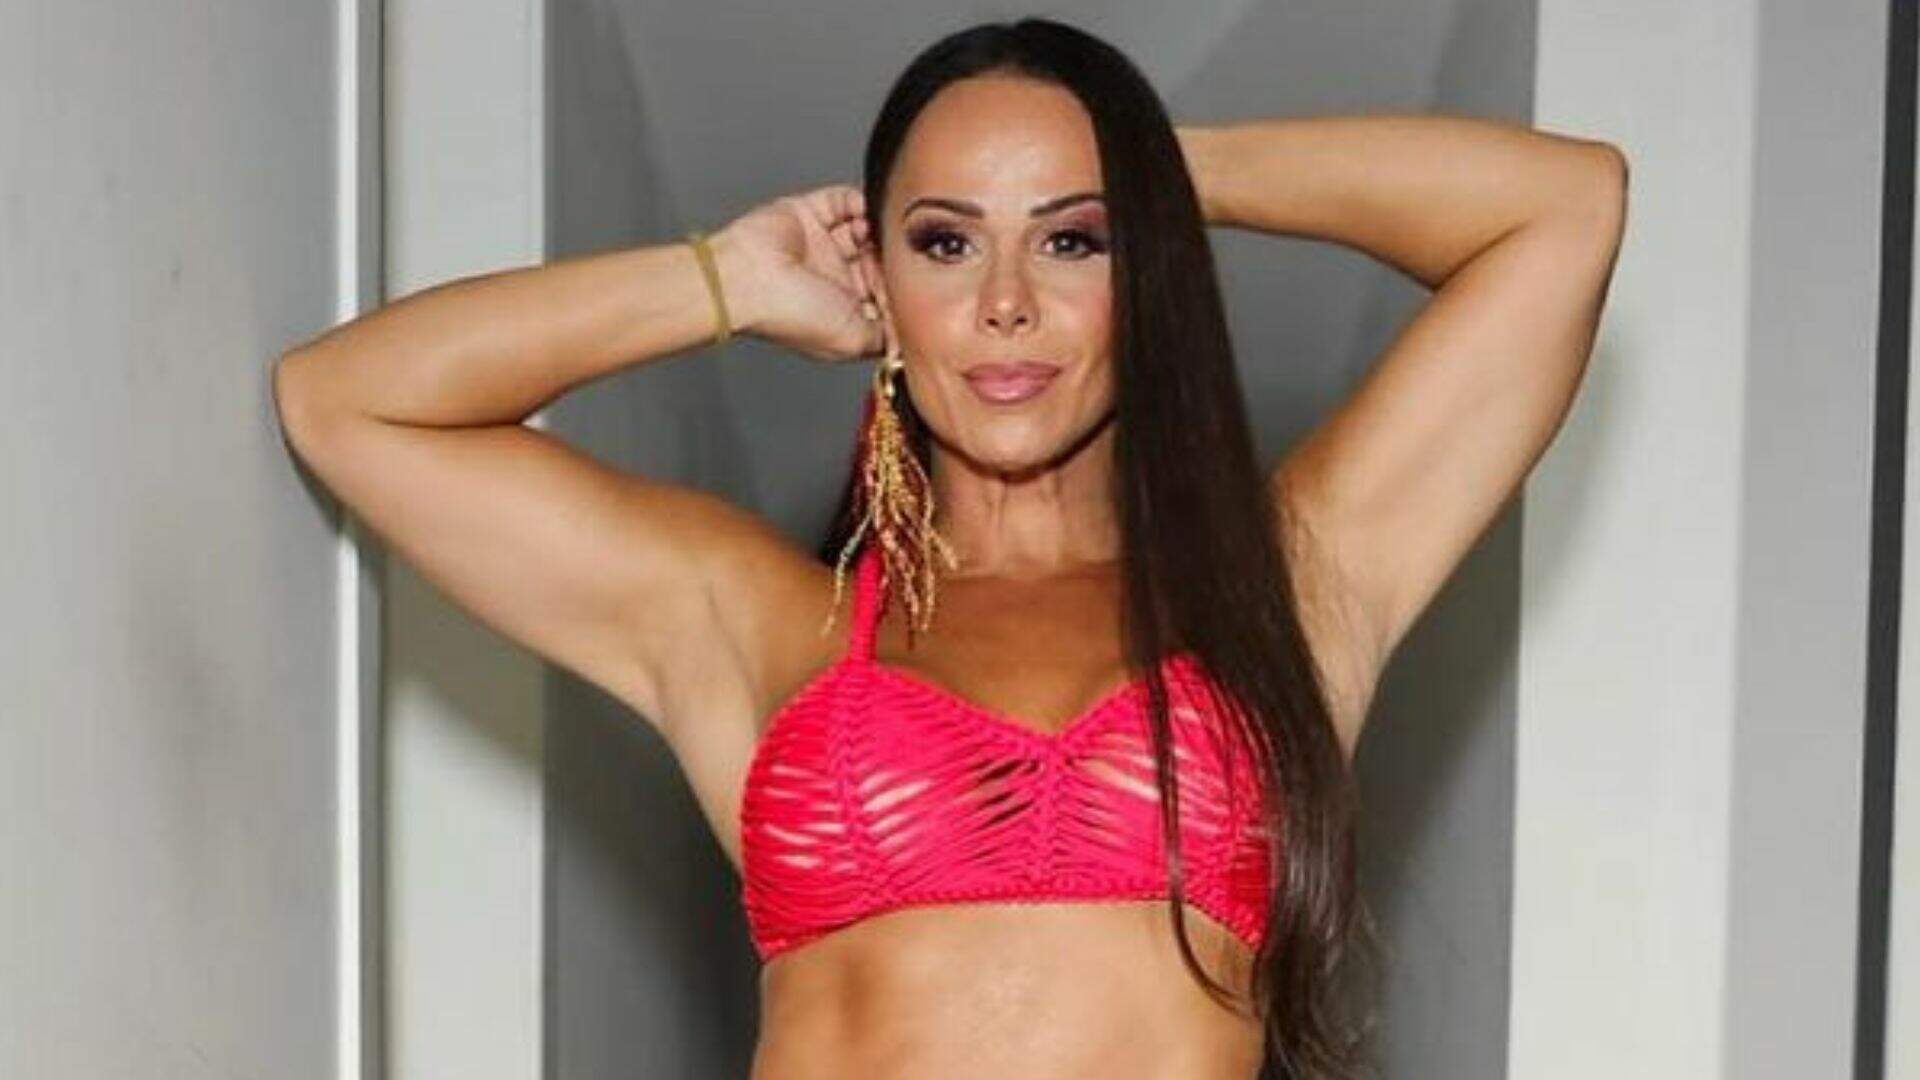 Em preparação para o Carnaval, Viviane Araújo impressiona ao revelar curvas saradas em look micro - Metropolitana FM